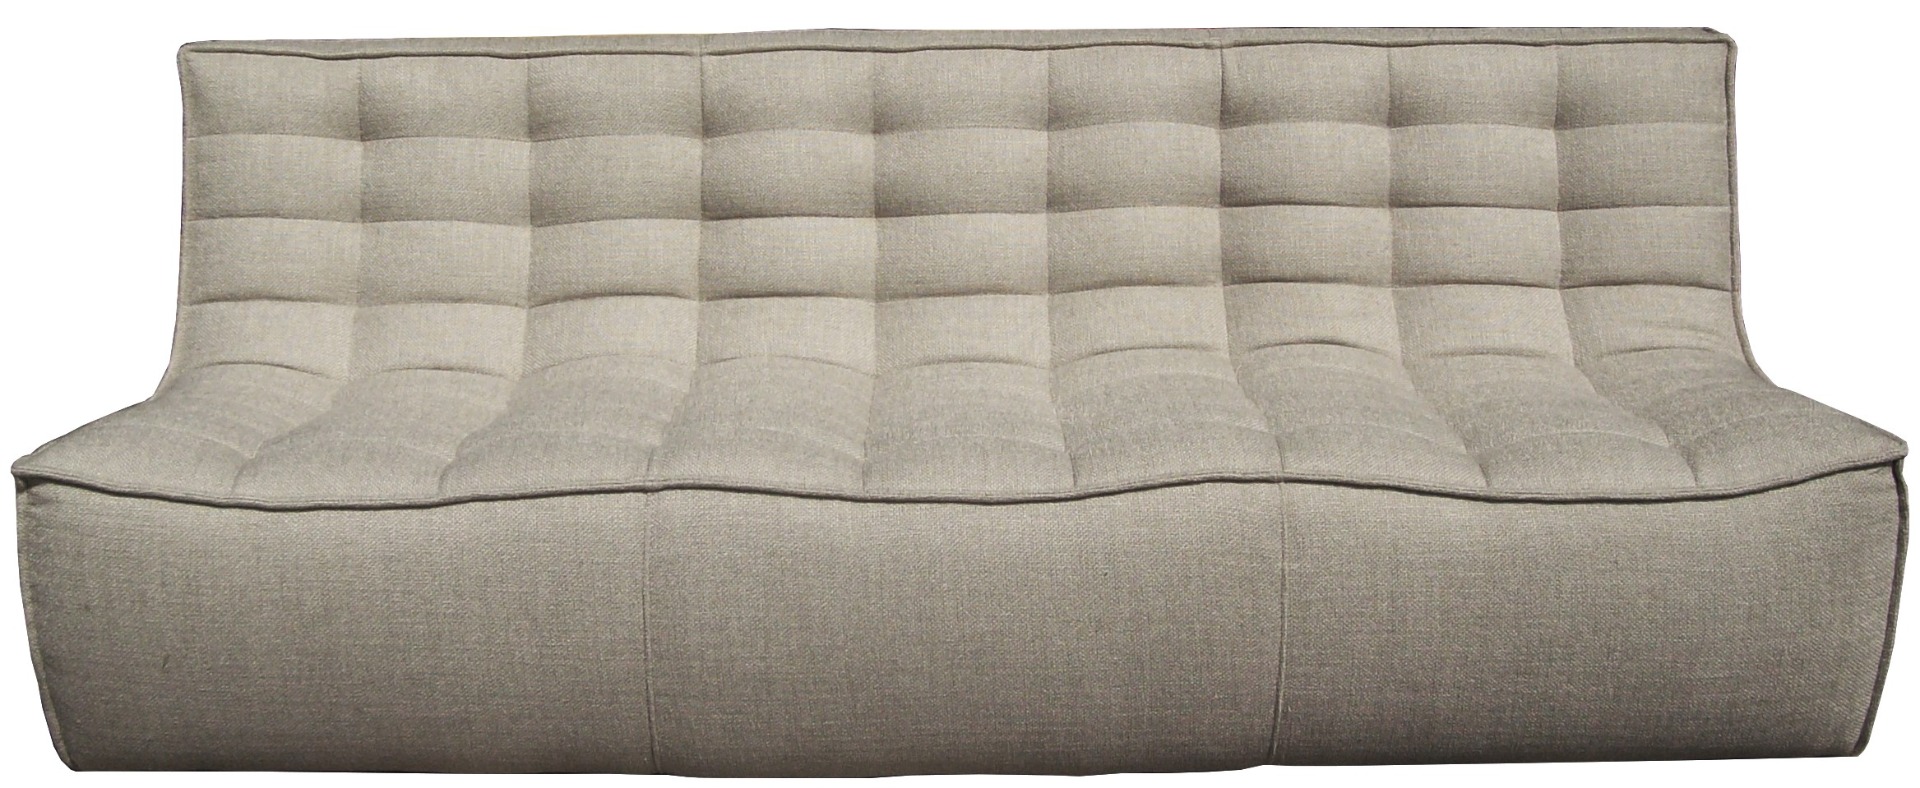 N701 Sofa in Beige